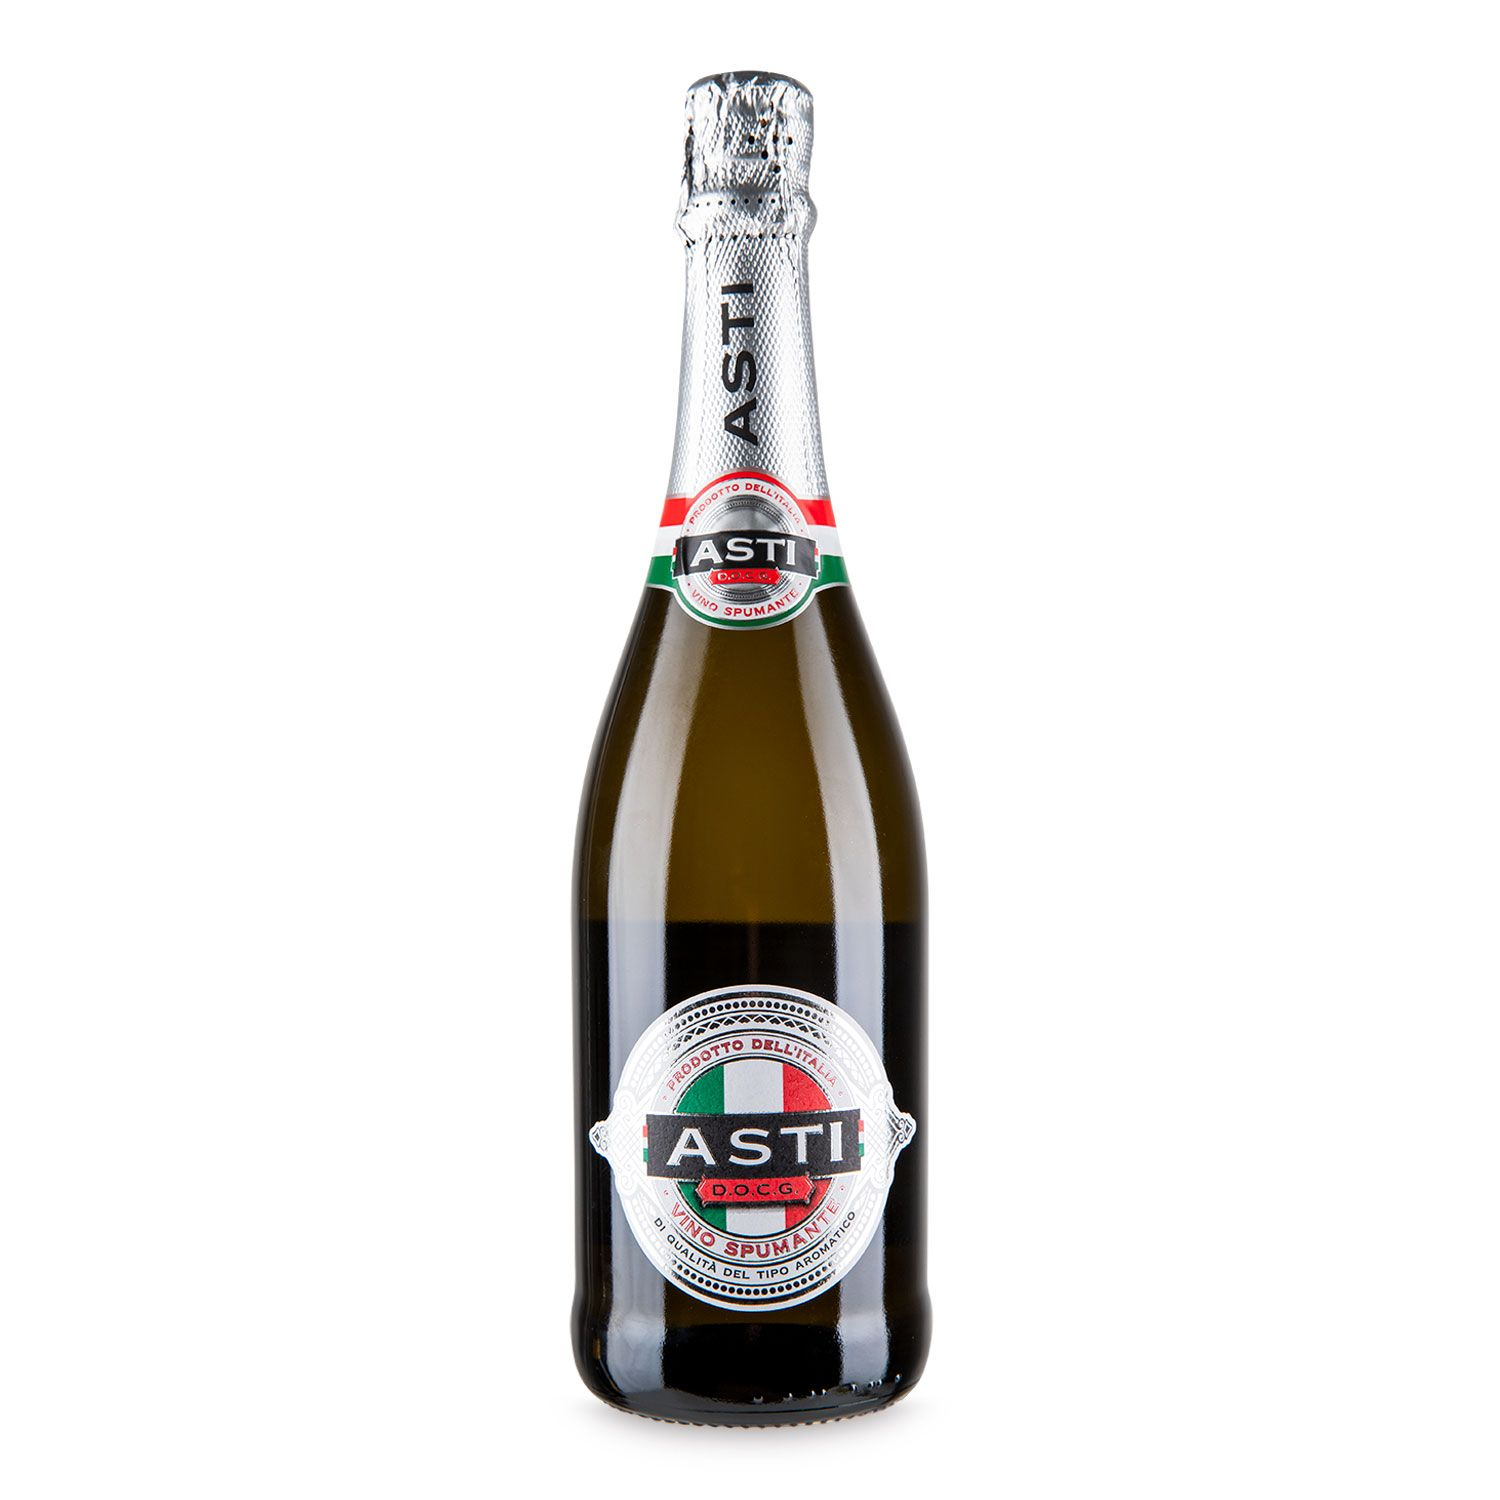 Ald's Asti war die günstigste Flasche Sekt, die wir online finden konnten